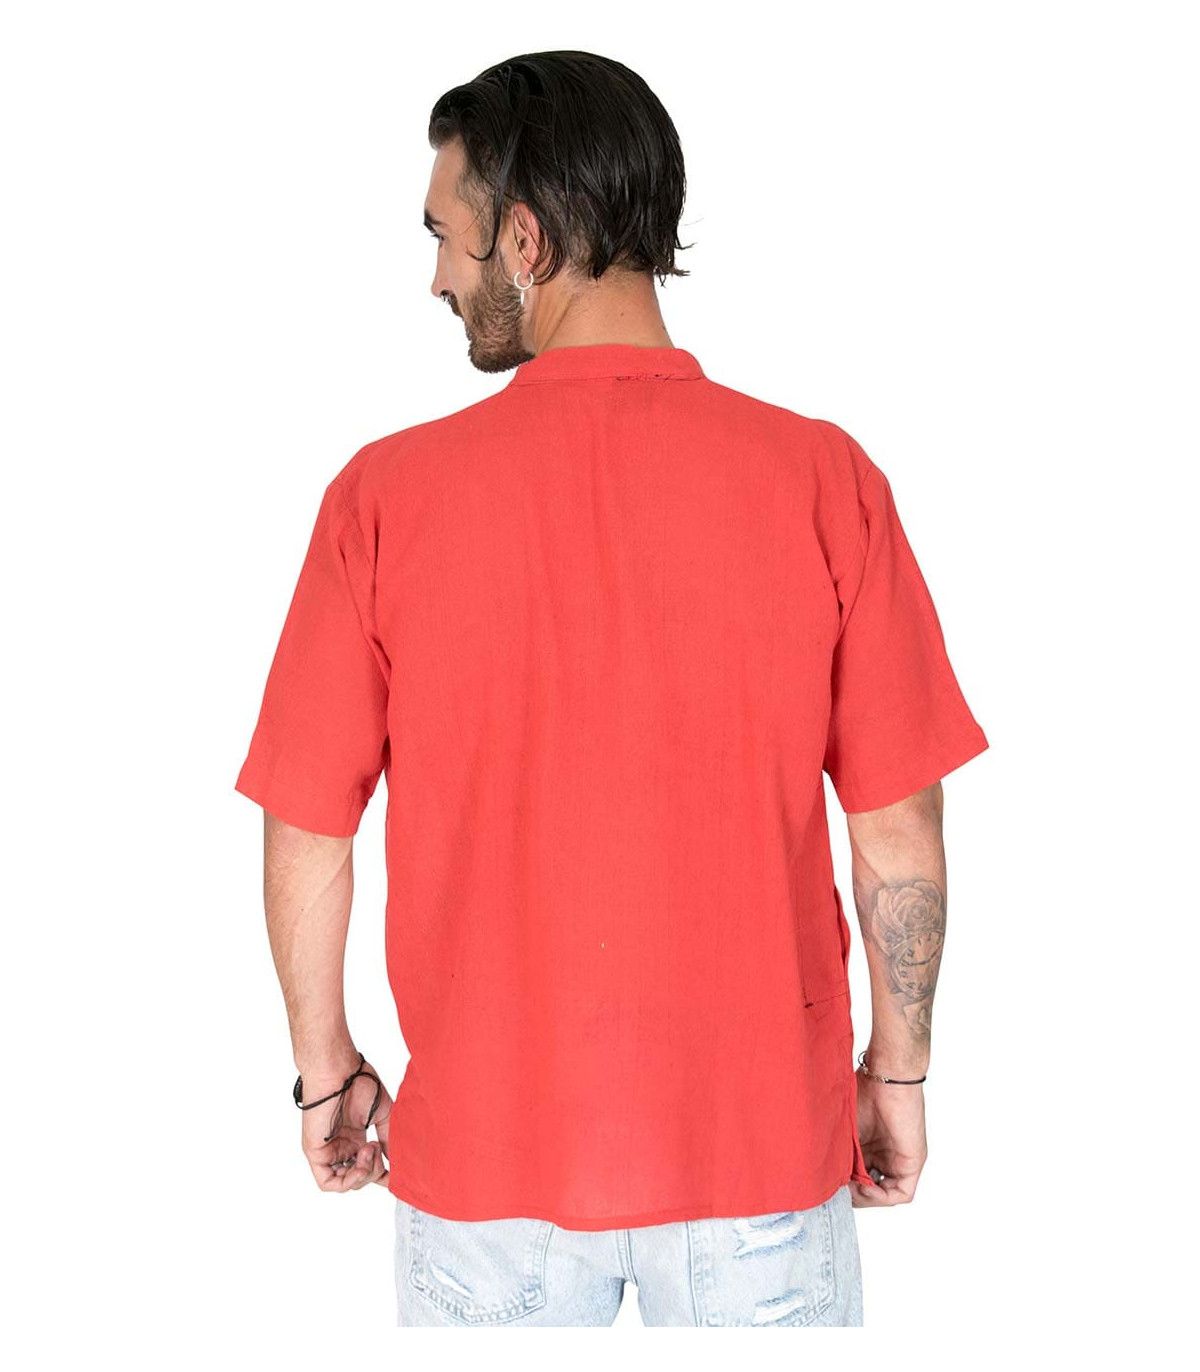 Mao collar shirt - Hippie Fashion Man